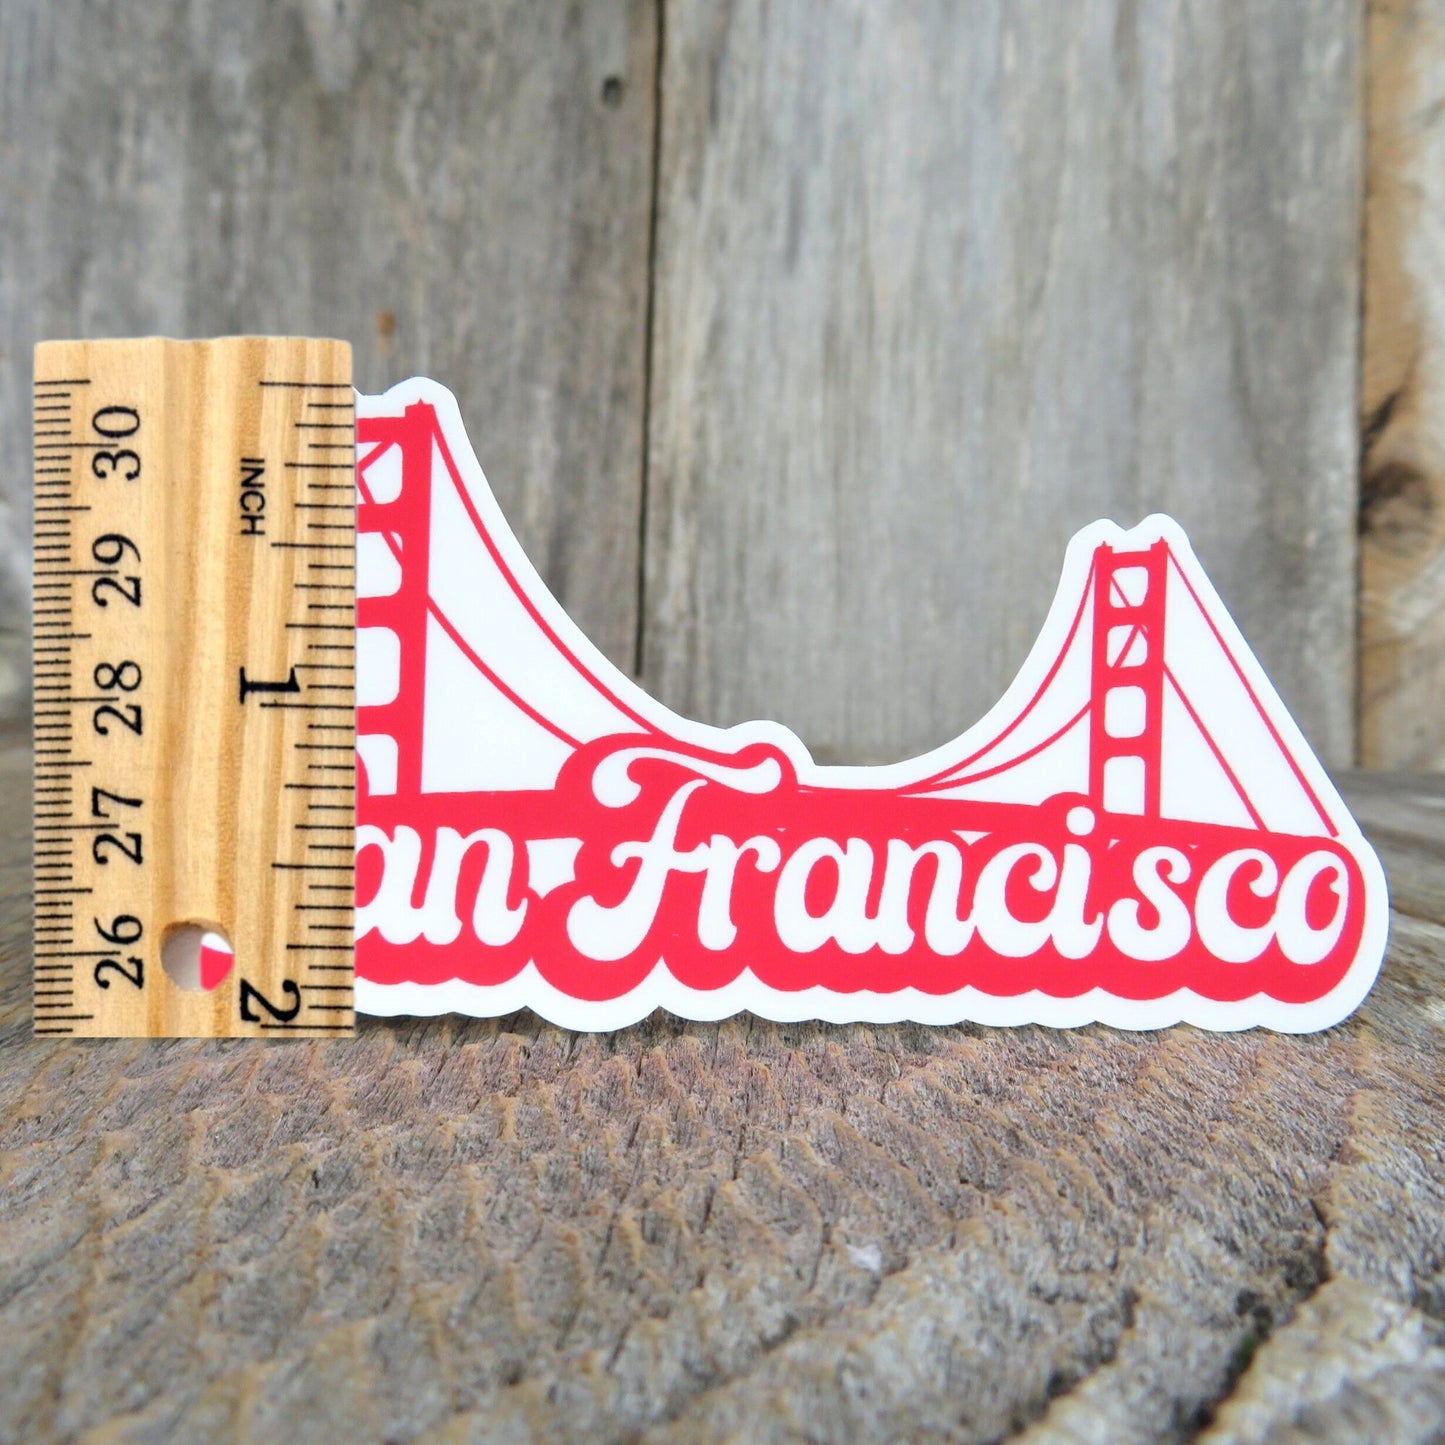 San Francisco Red Golden Gate Bridge Sticker California Souvenir Retro Bubble Letters